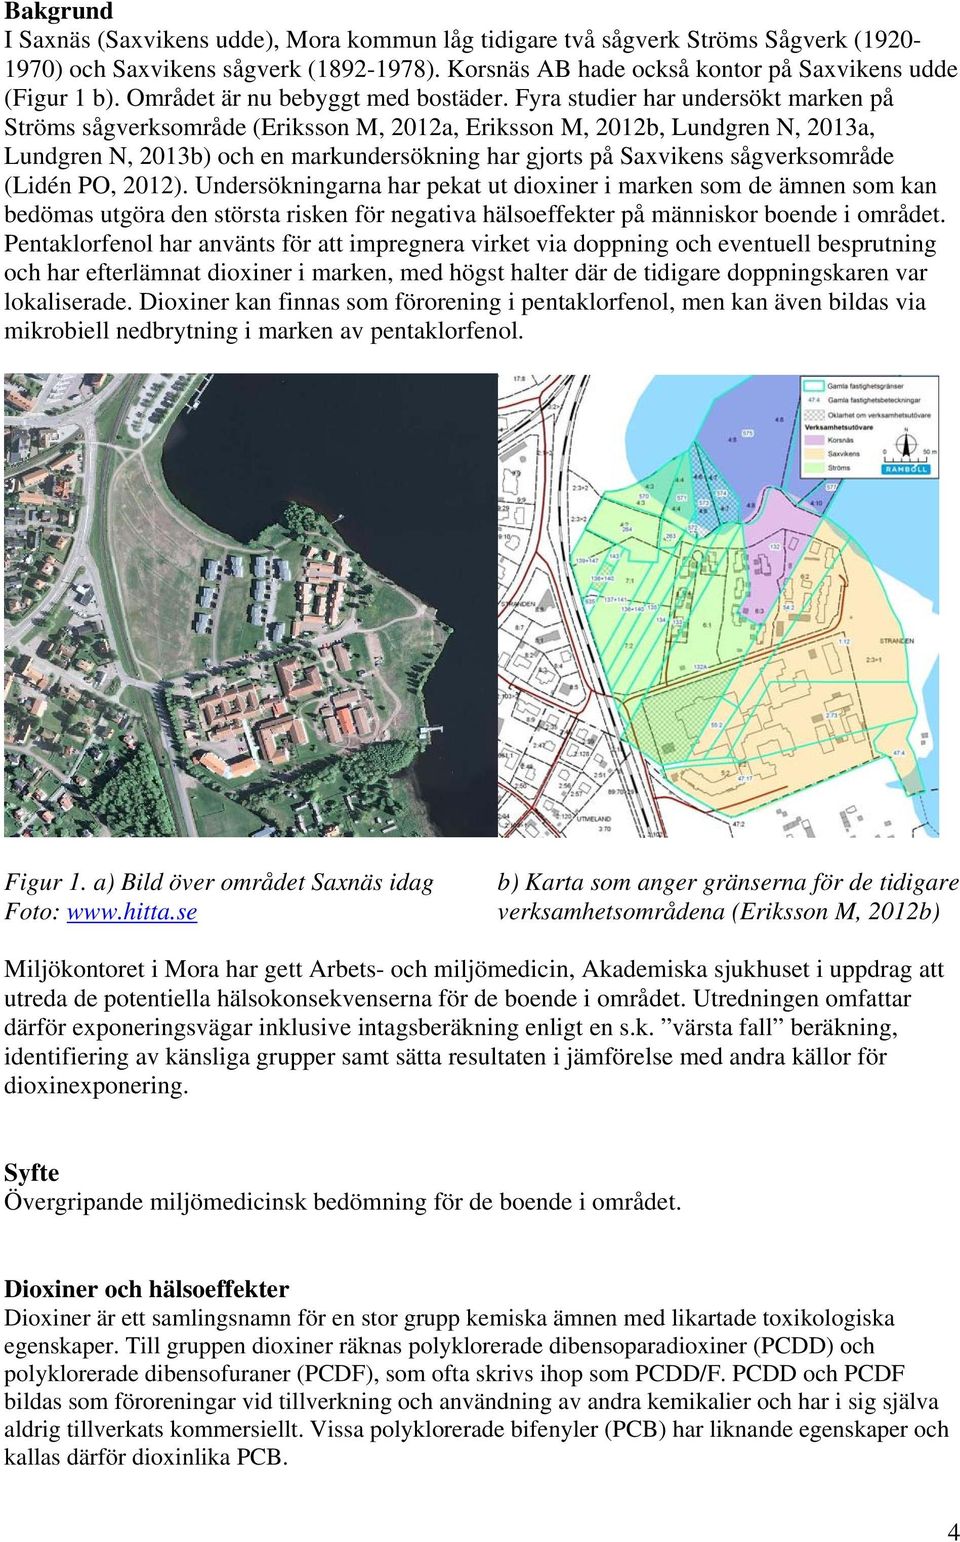 Fyra studier har undersökt marken på Ströms sågverksområde (Eriksson M, 2012a, Eriksson M, 2012b, Lundgren N, 2013a, Lundgren N, 2013b) och en markundersökning har gjorts på Saxvikens sågverksområde